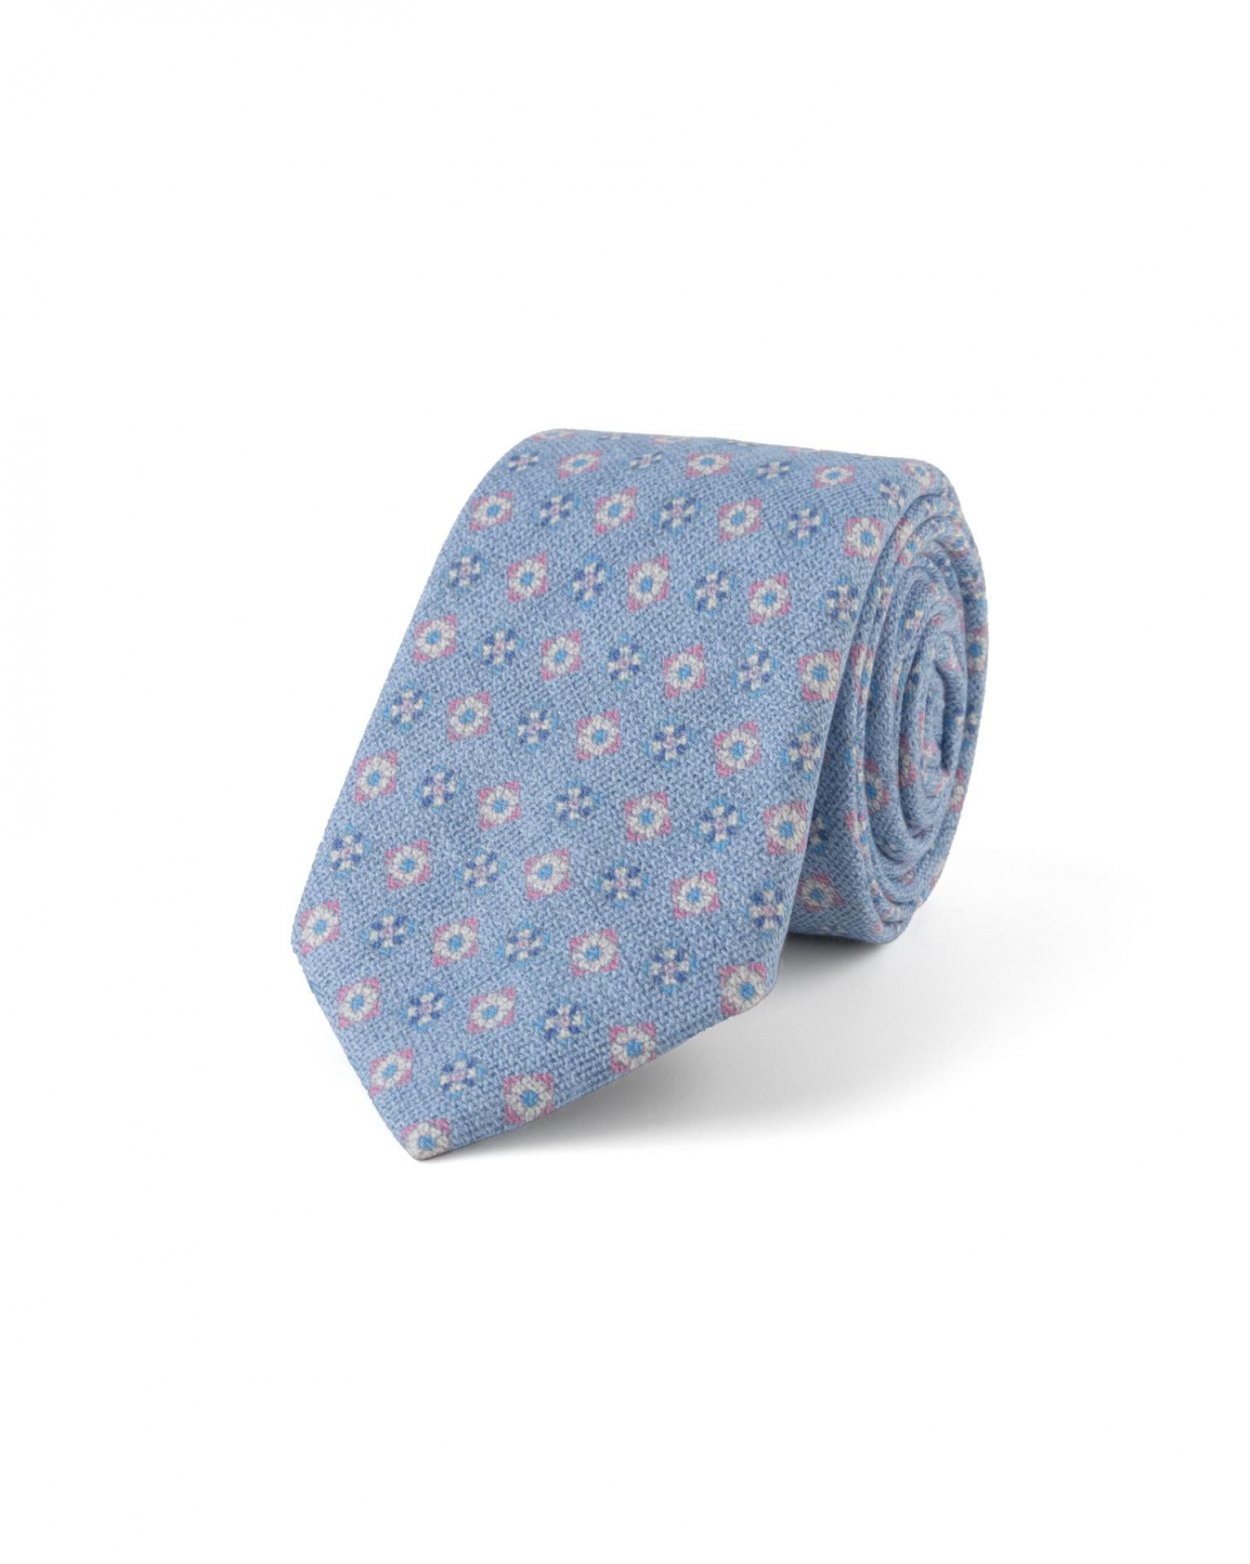 Modrorůžová hedvábná kravata s geometrickým vzorem